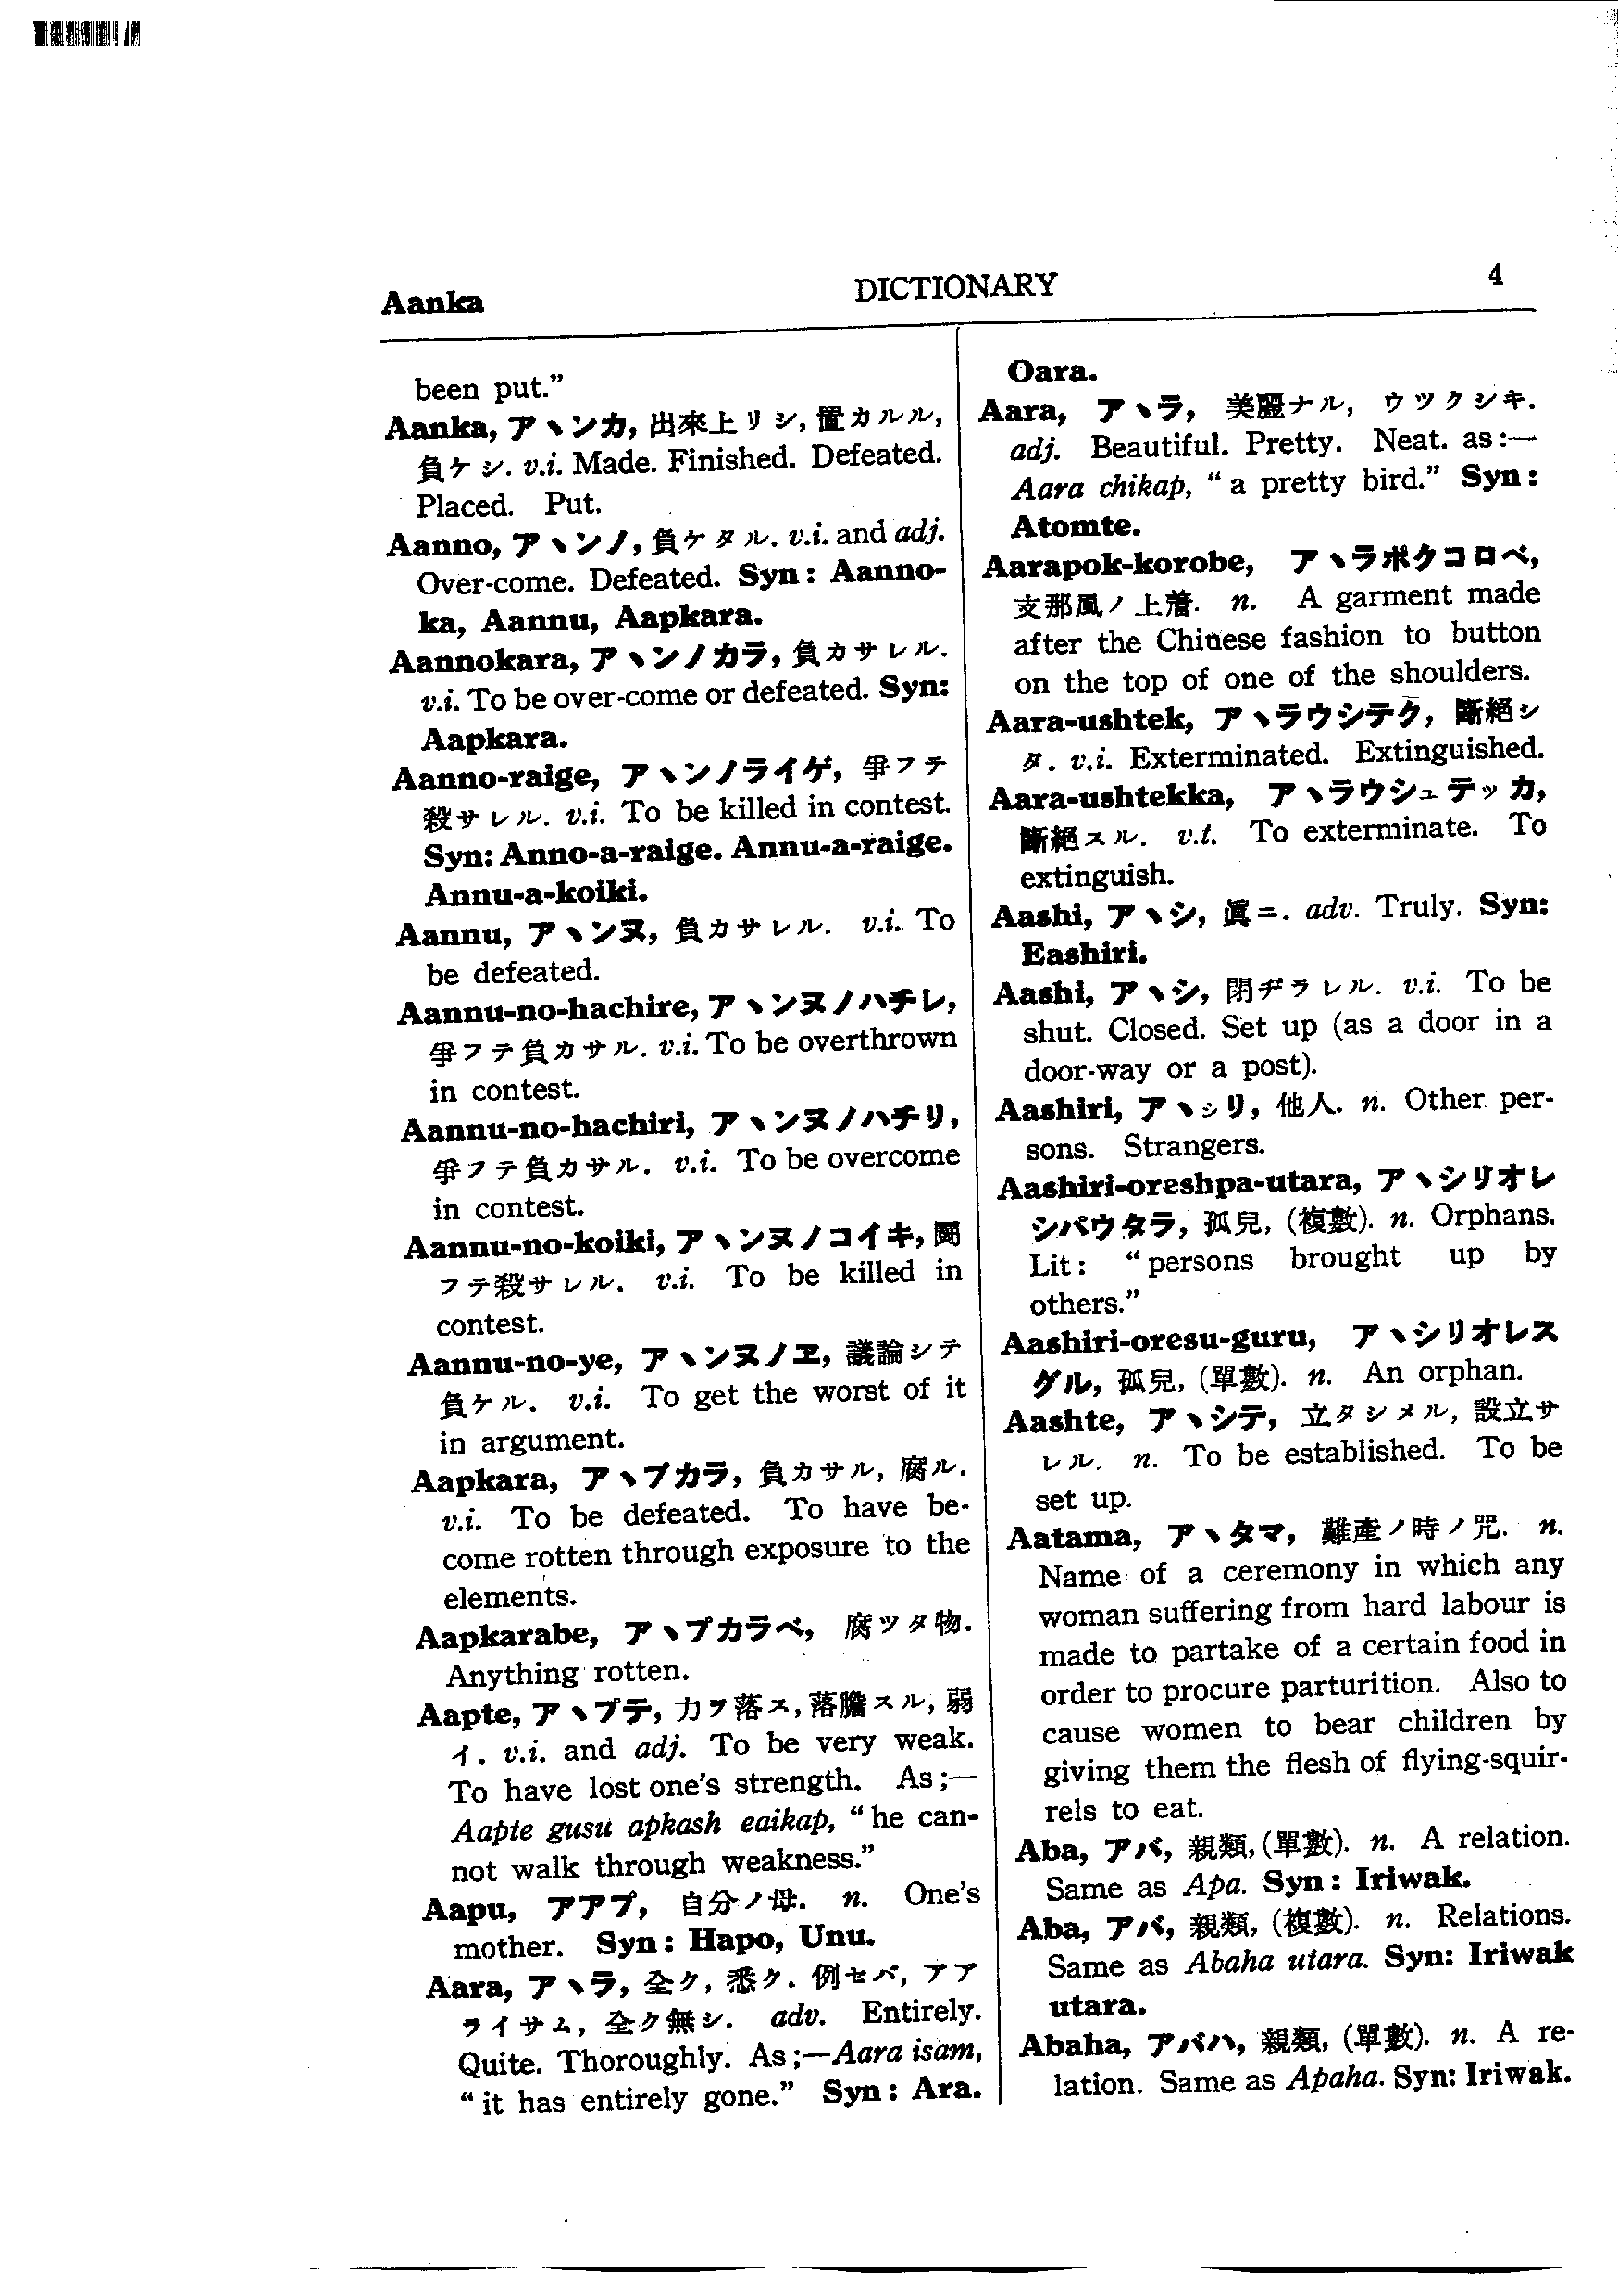 バチェラーWEB蝦和英(かわいい)辞典-アイヌ語・日本語・英語辞典 page. 4